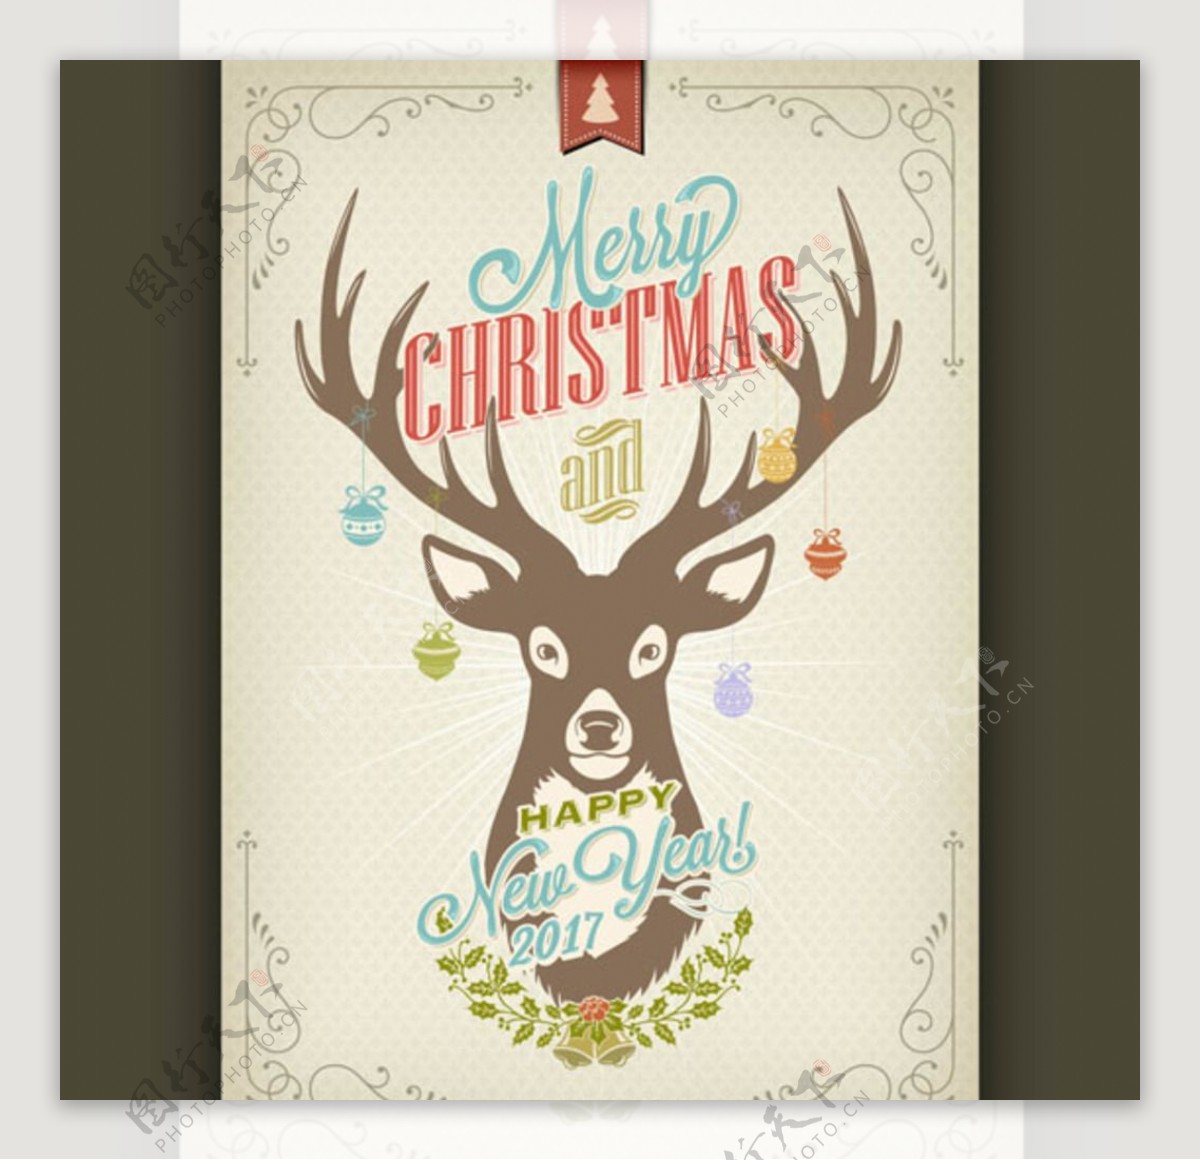 怀旧圣诞节驯鹿海报